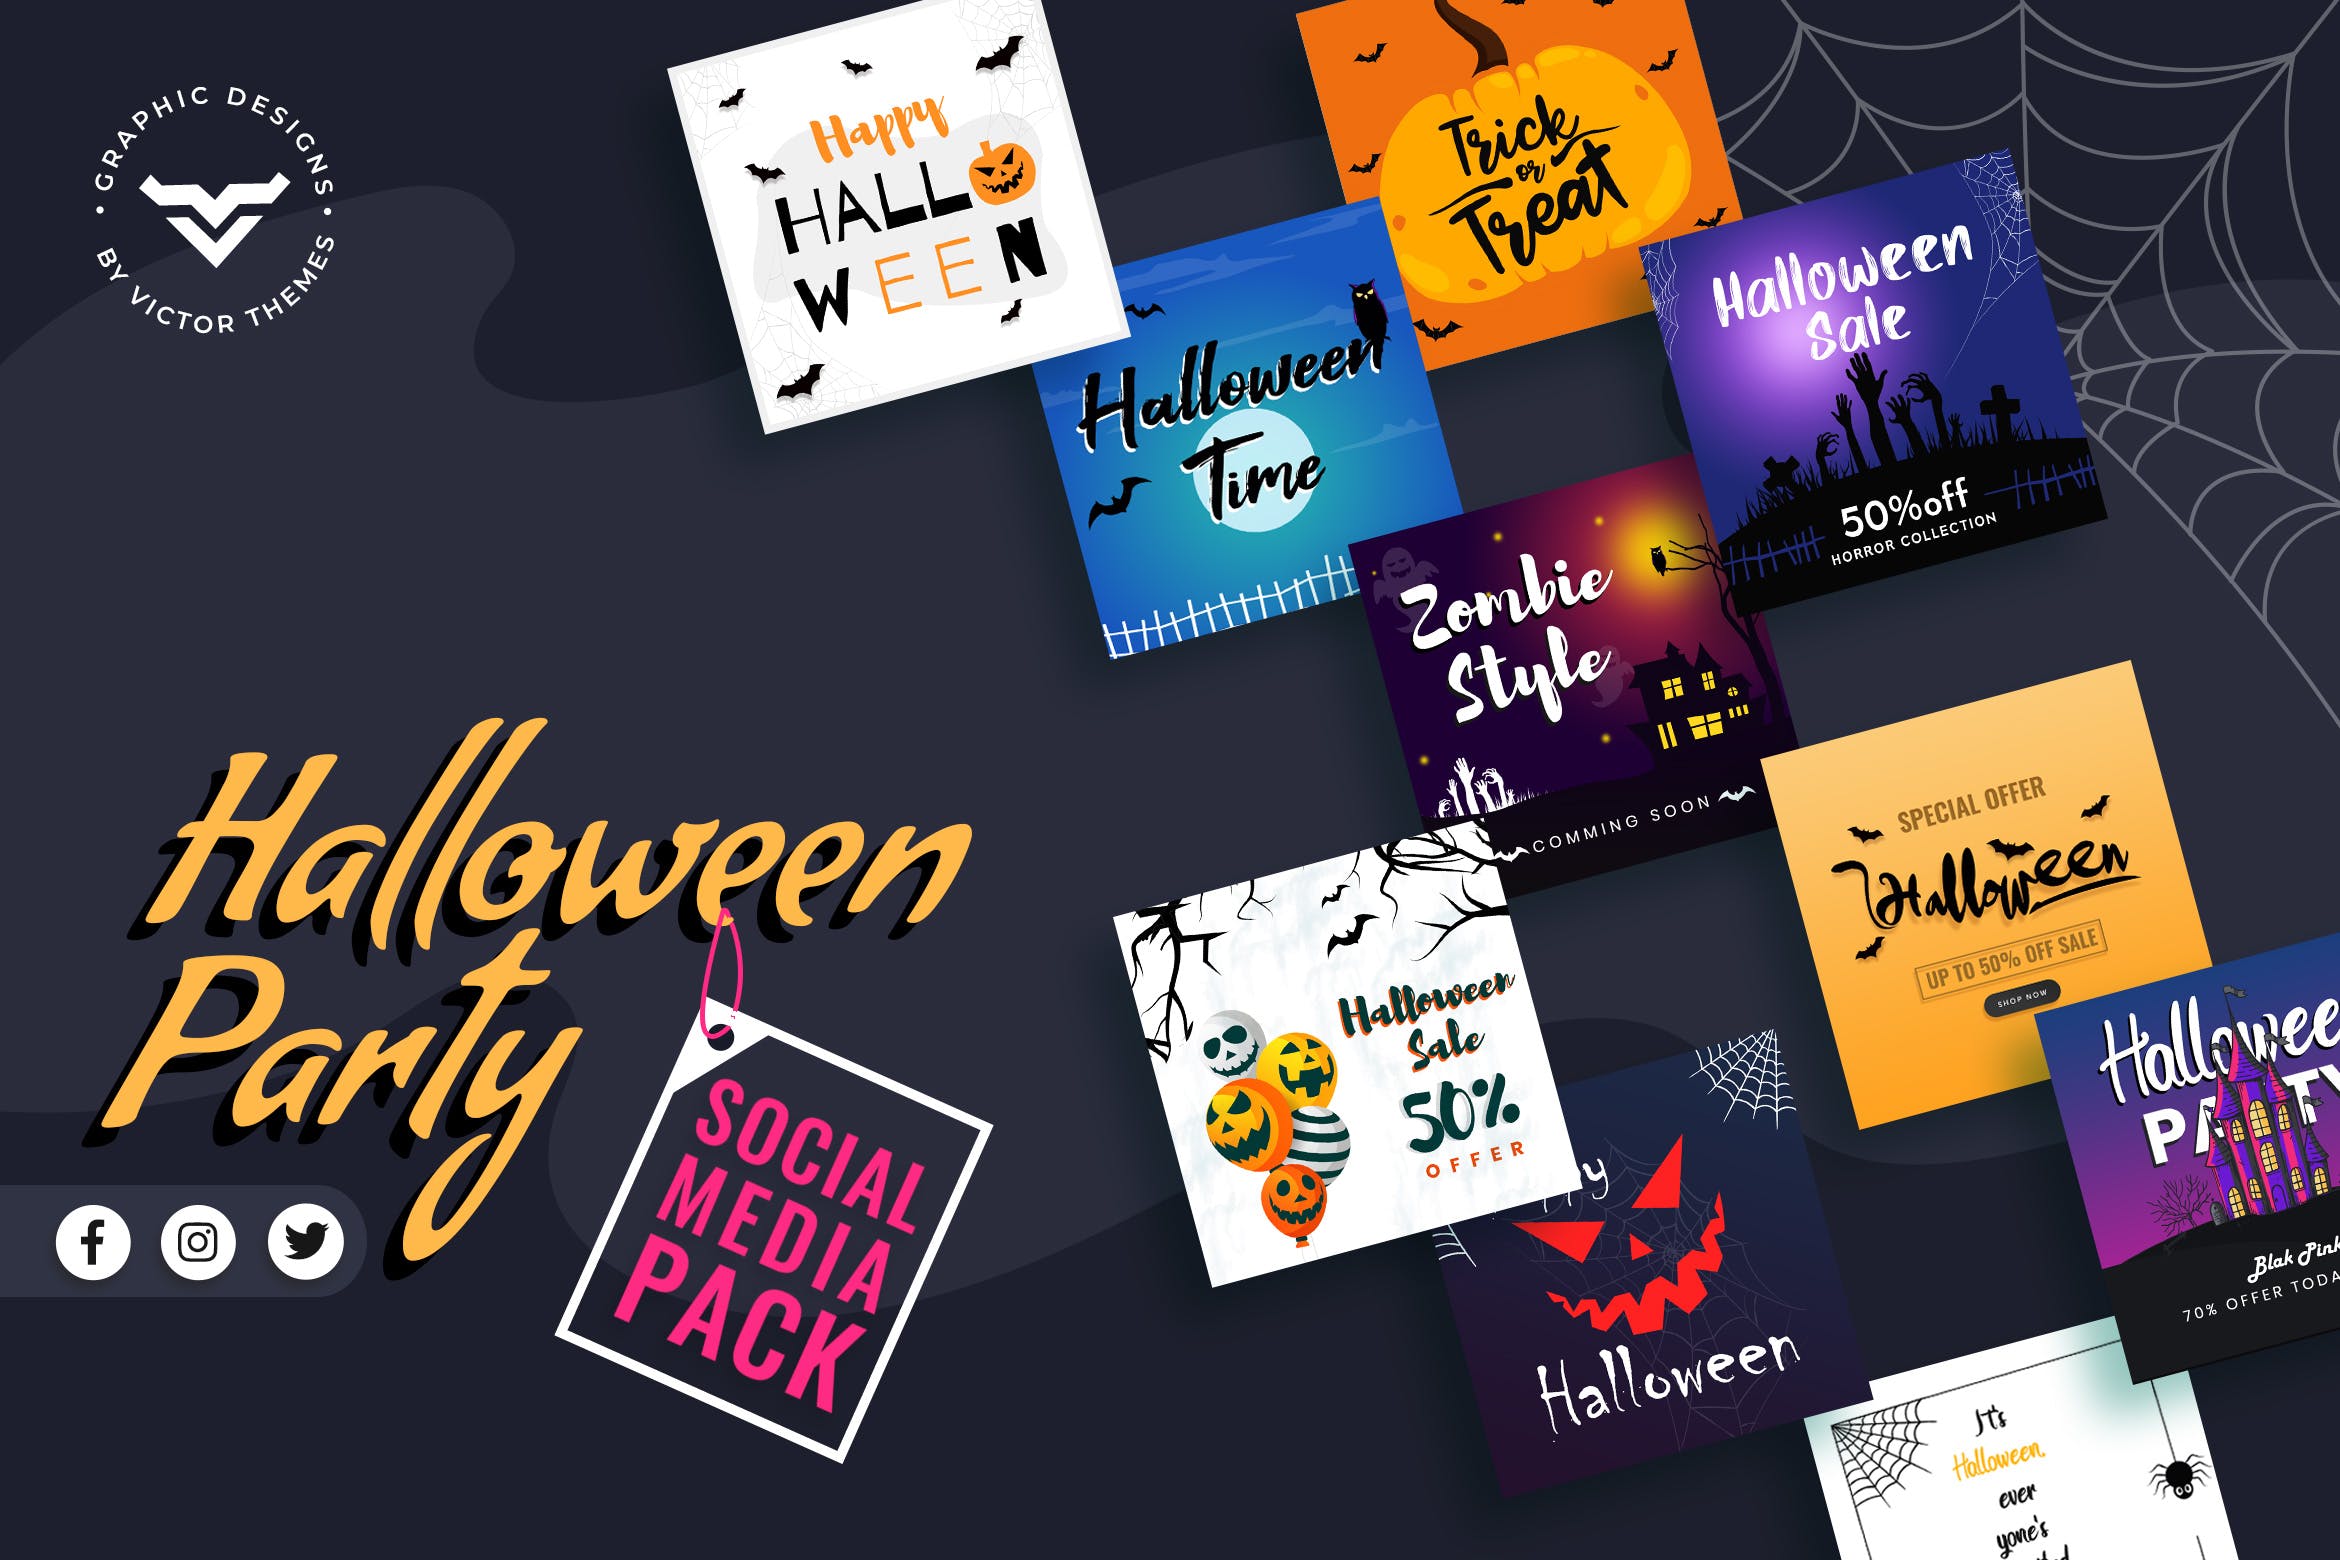 万圣节派对活动推广主题社交媒体设计贴图模板 Halloween Social Media Template设计素材模板